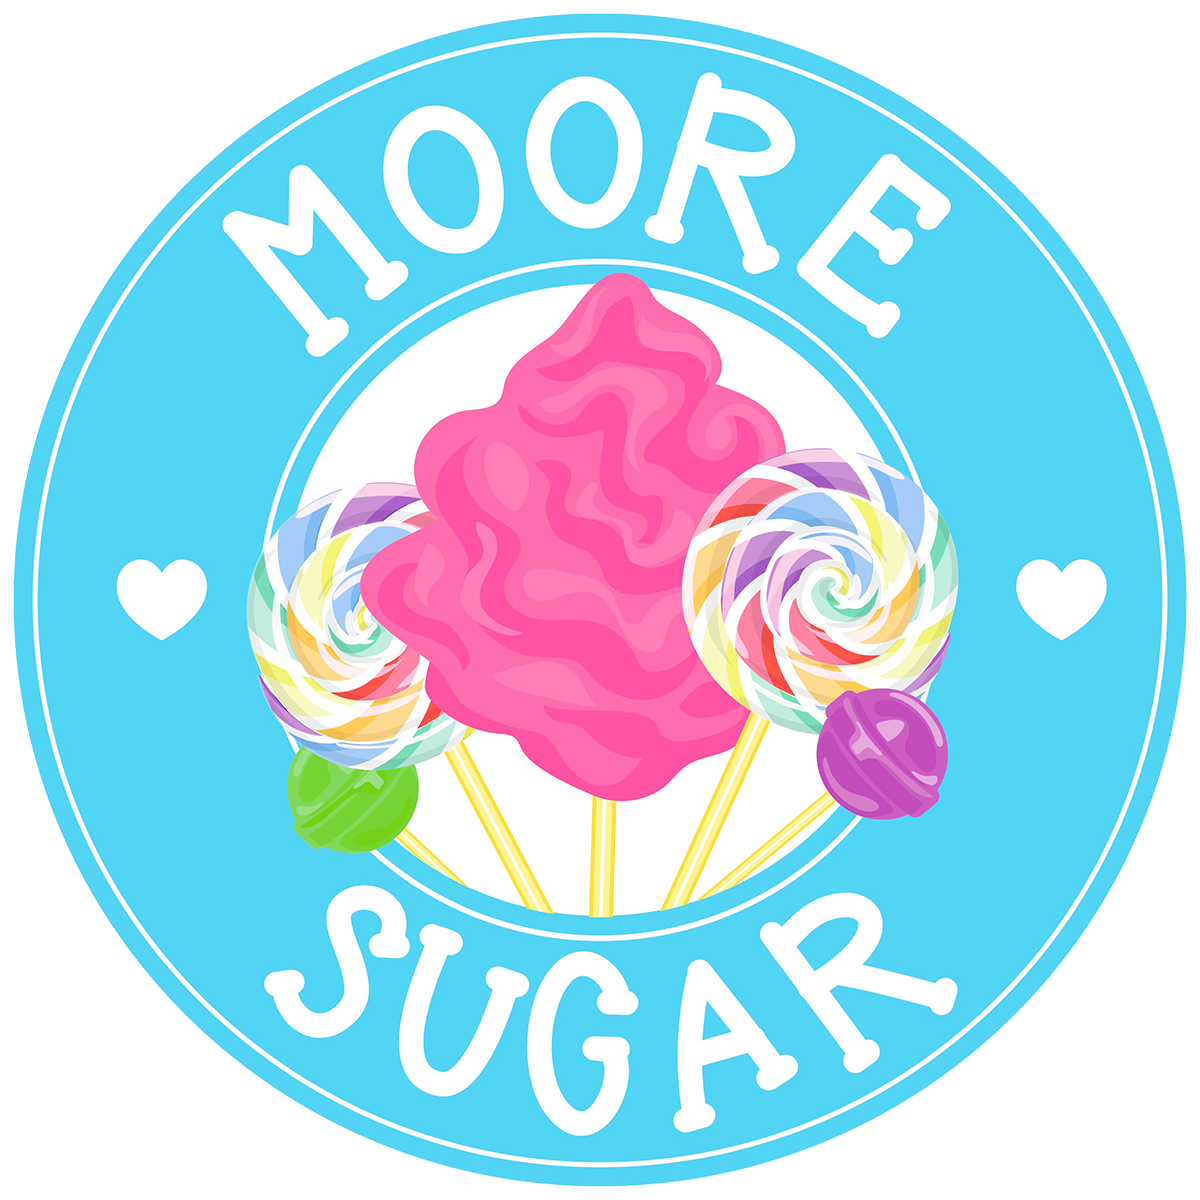 Moore Sugar